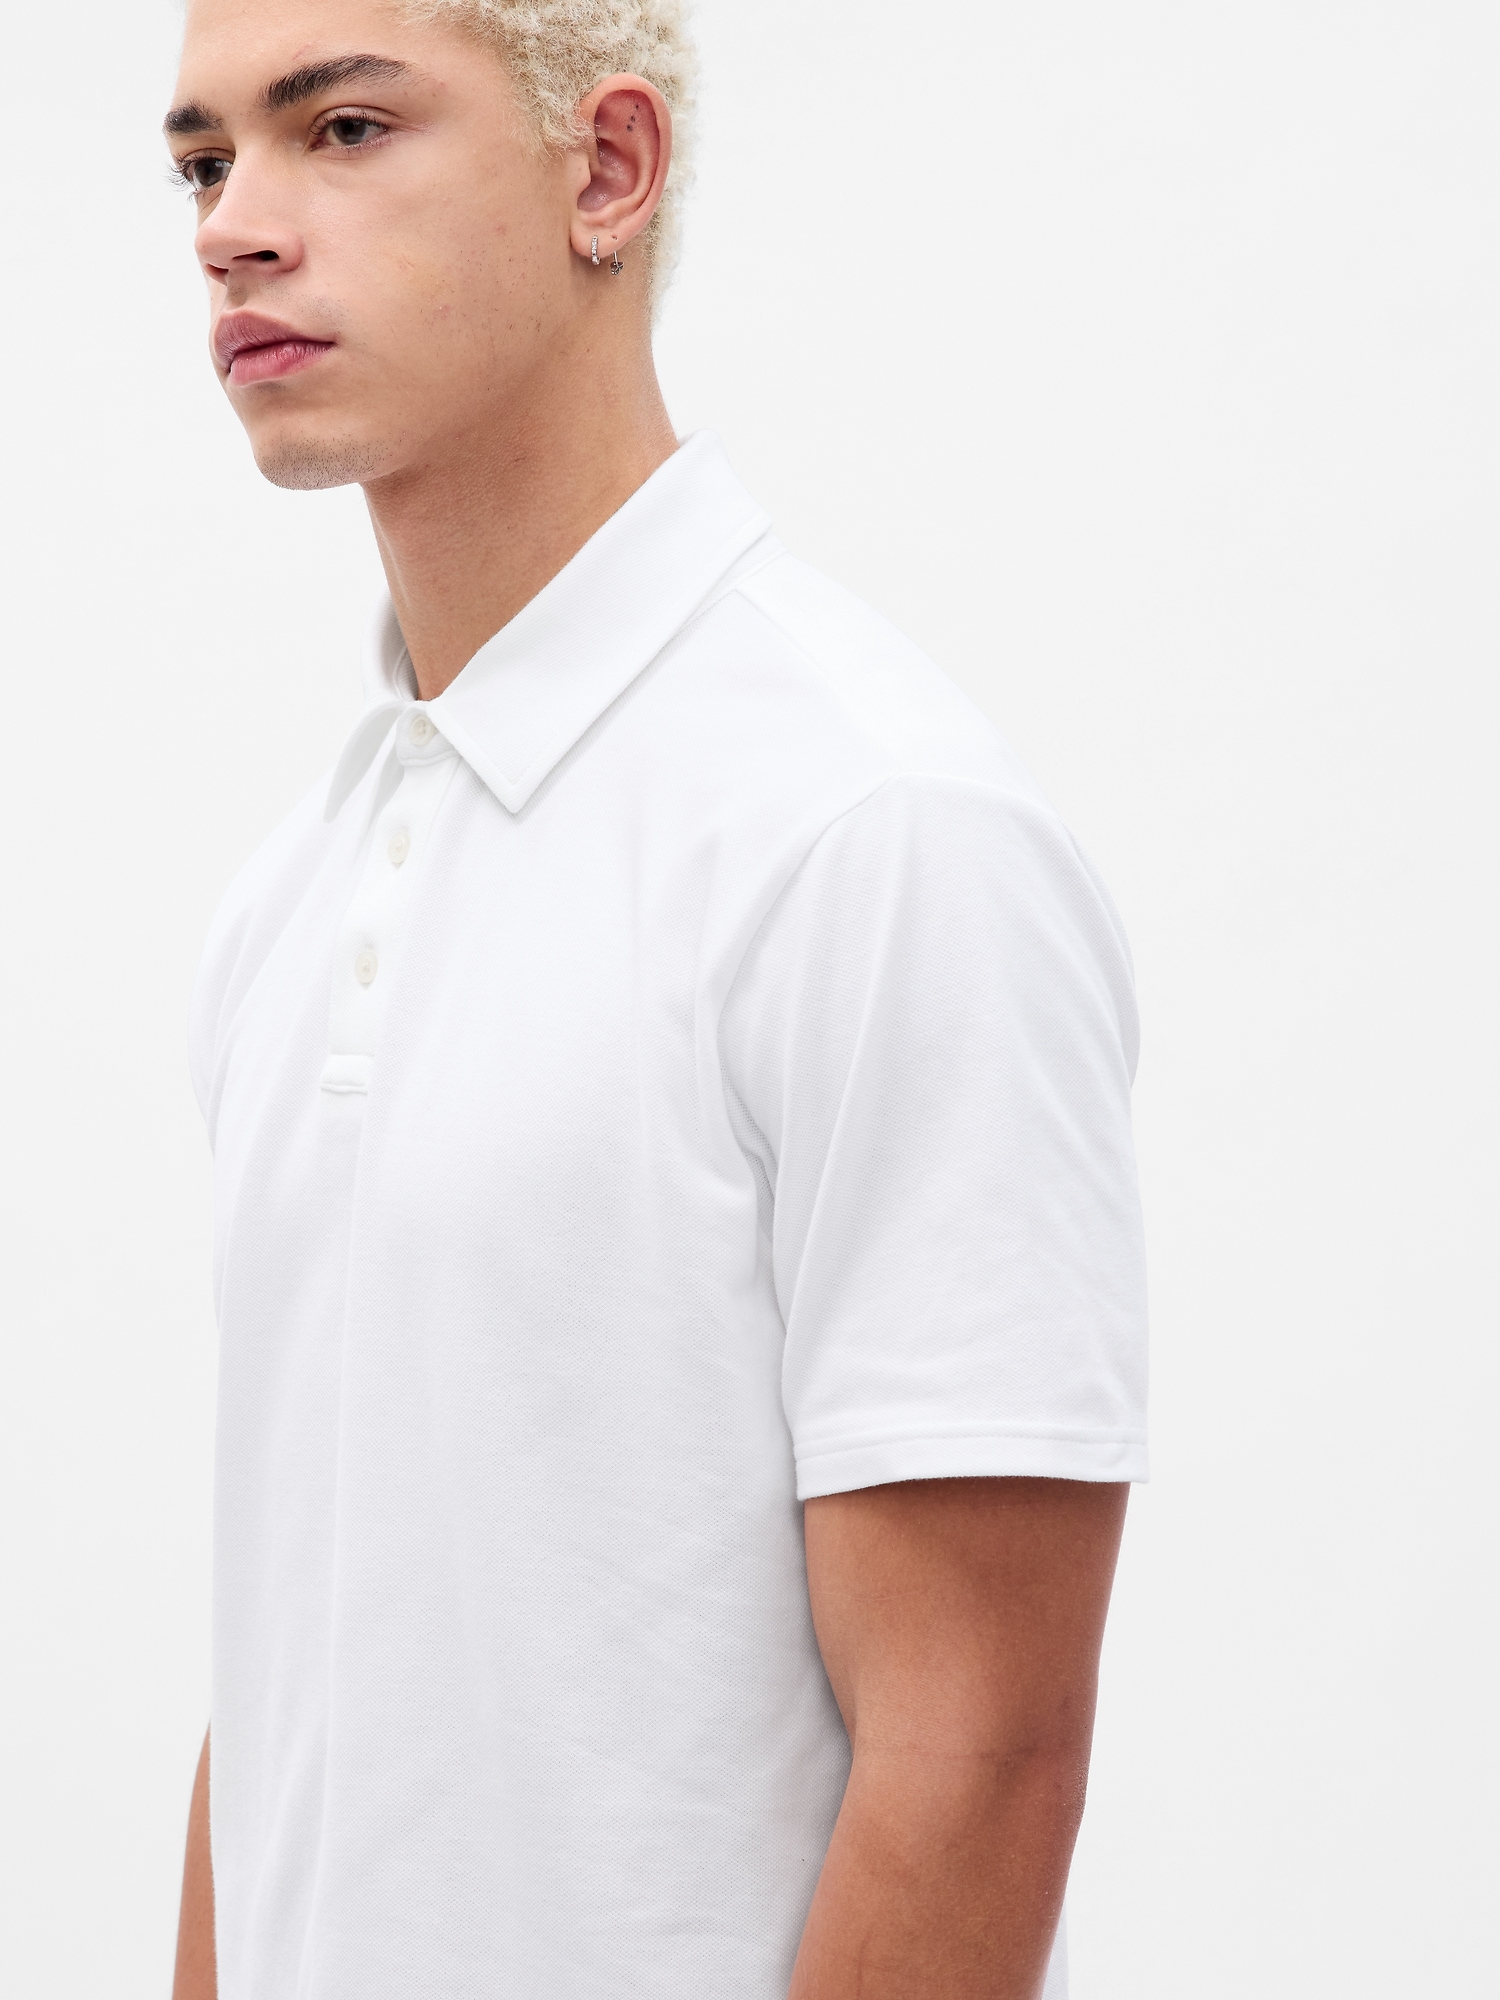 Refined Pique Polo Shirt | Gap